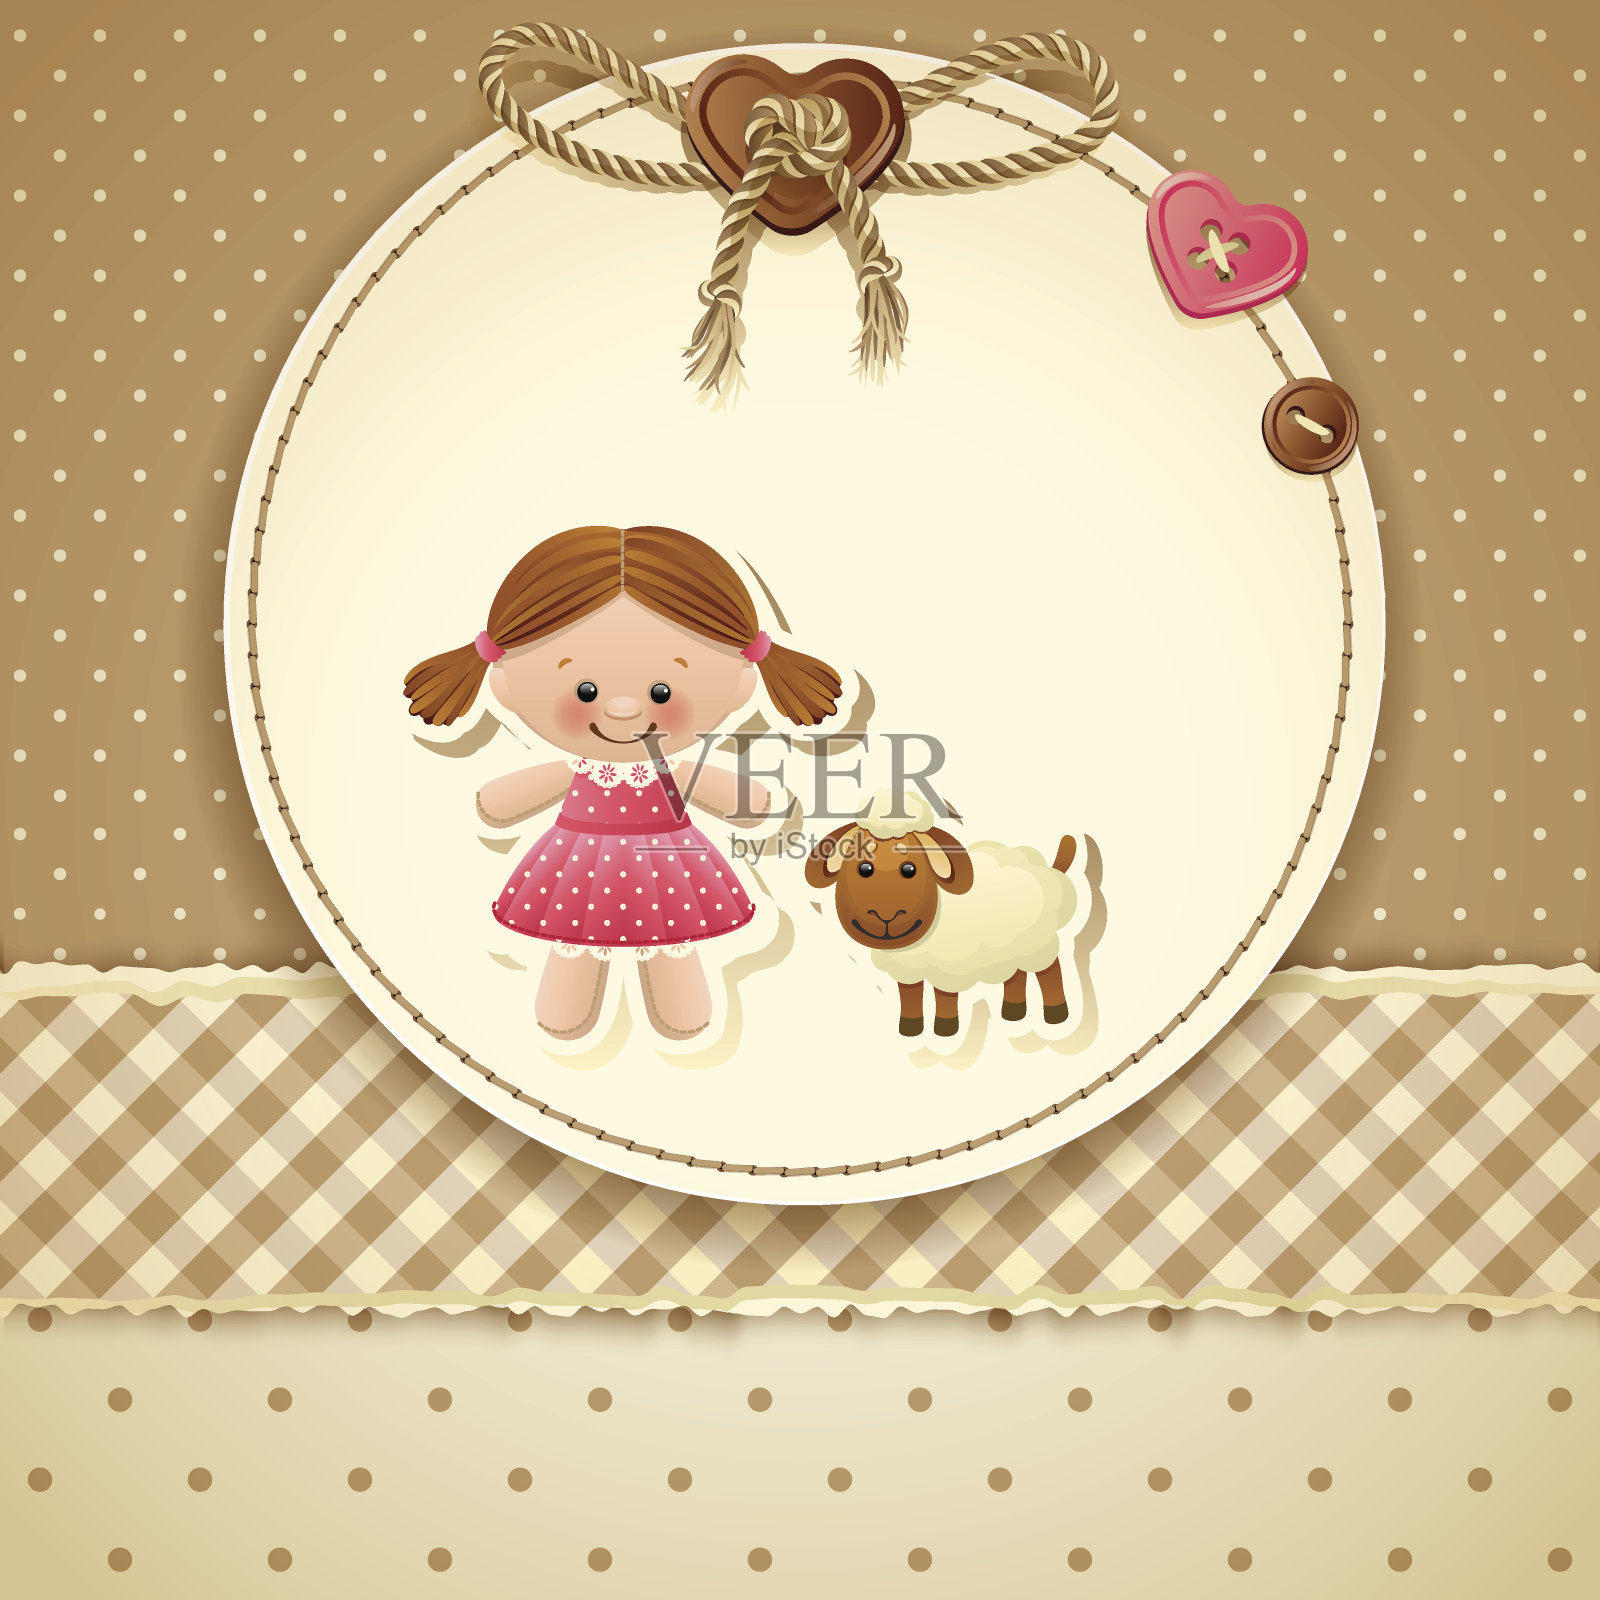 婴儿派对的邀请函上画着一个小女孩和一只羔羊插画图片素材